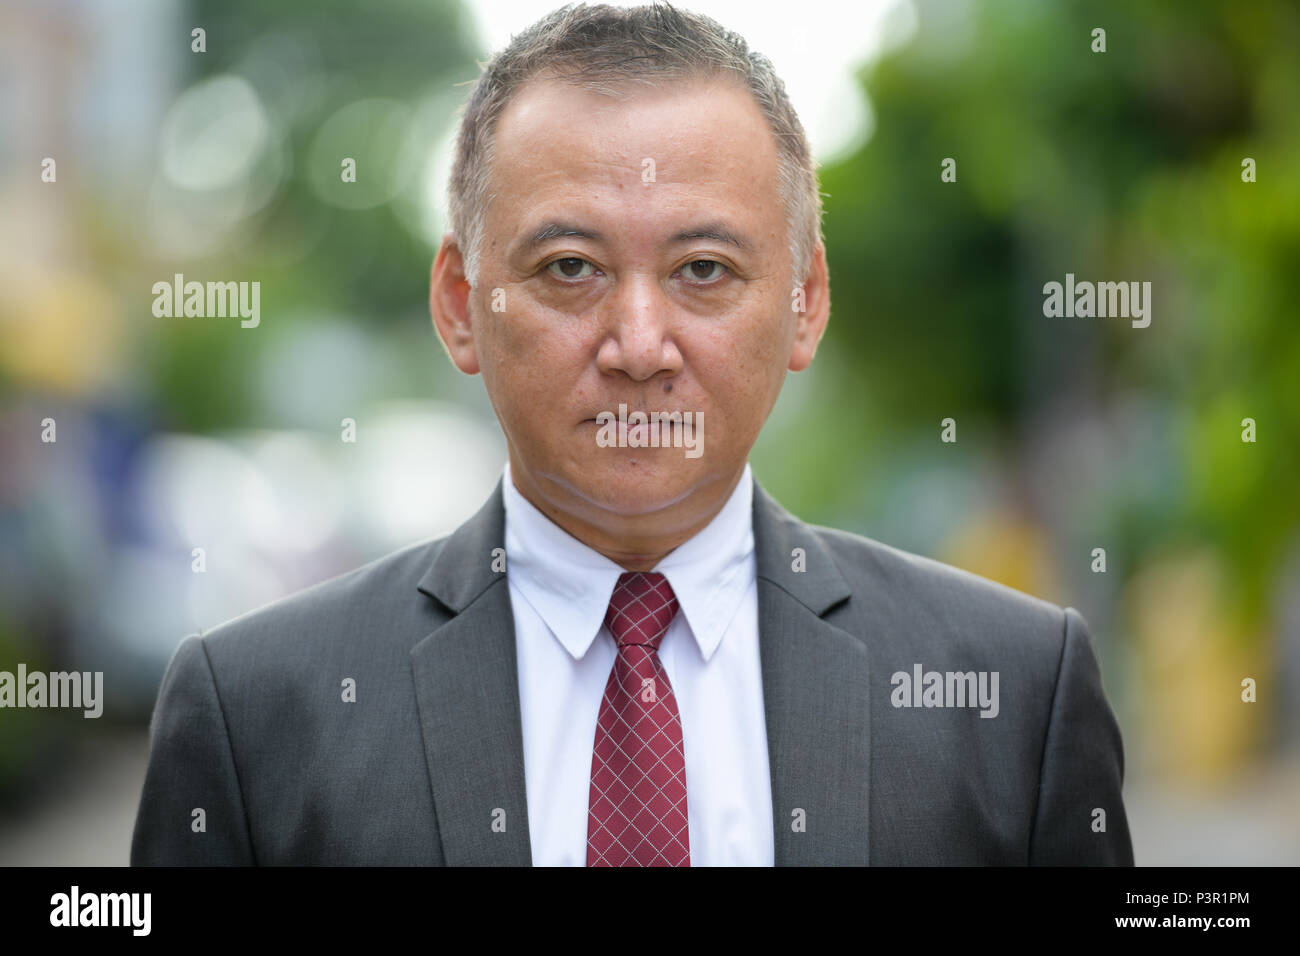 Mature businessman japonais dans les rues à l'extérieur Banque D'Images